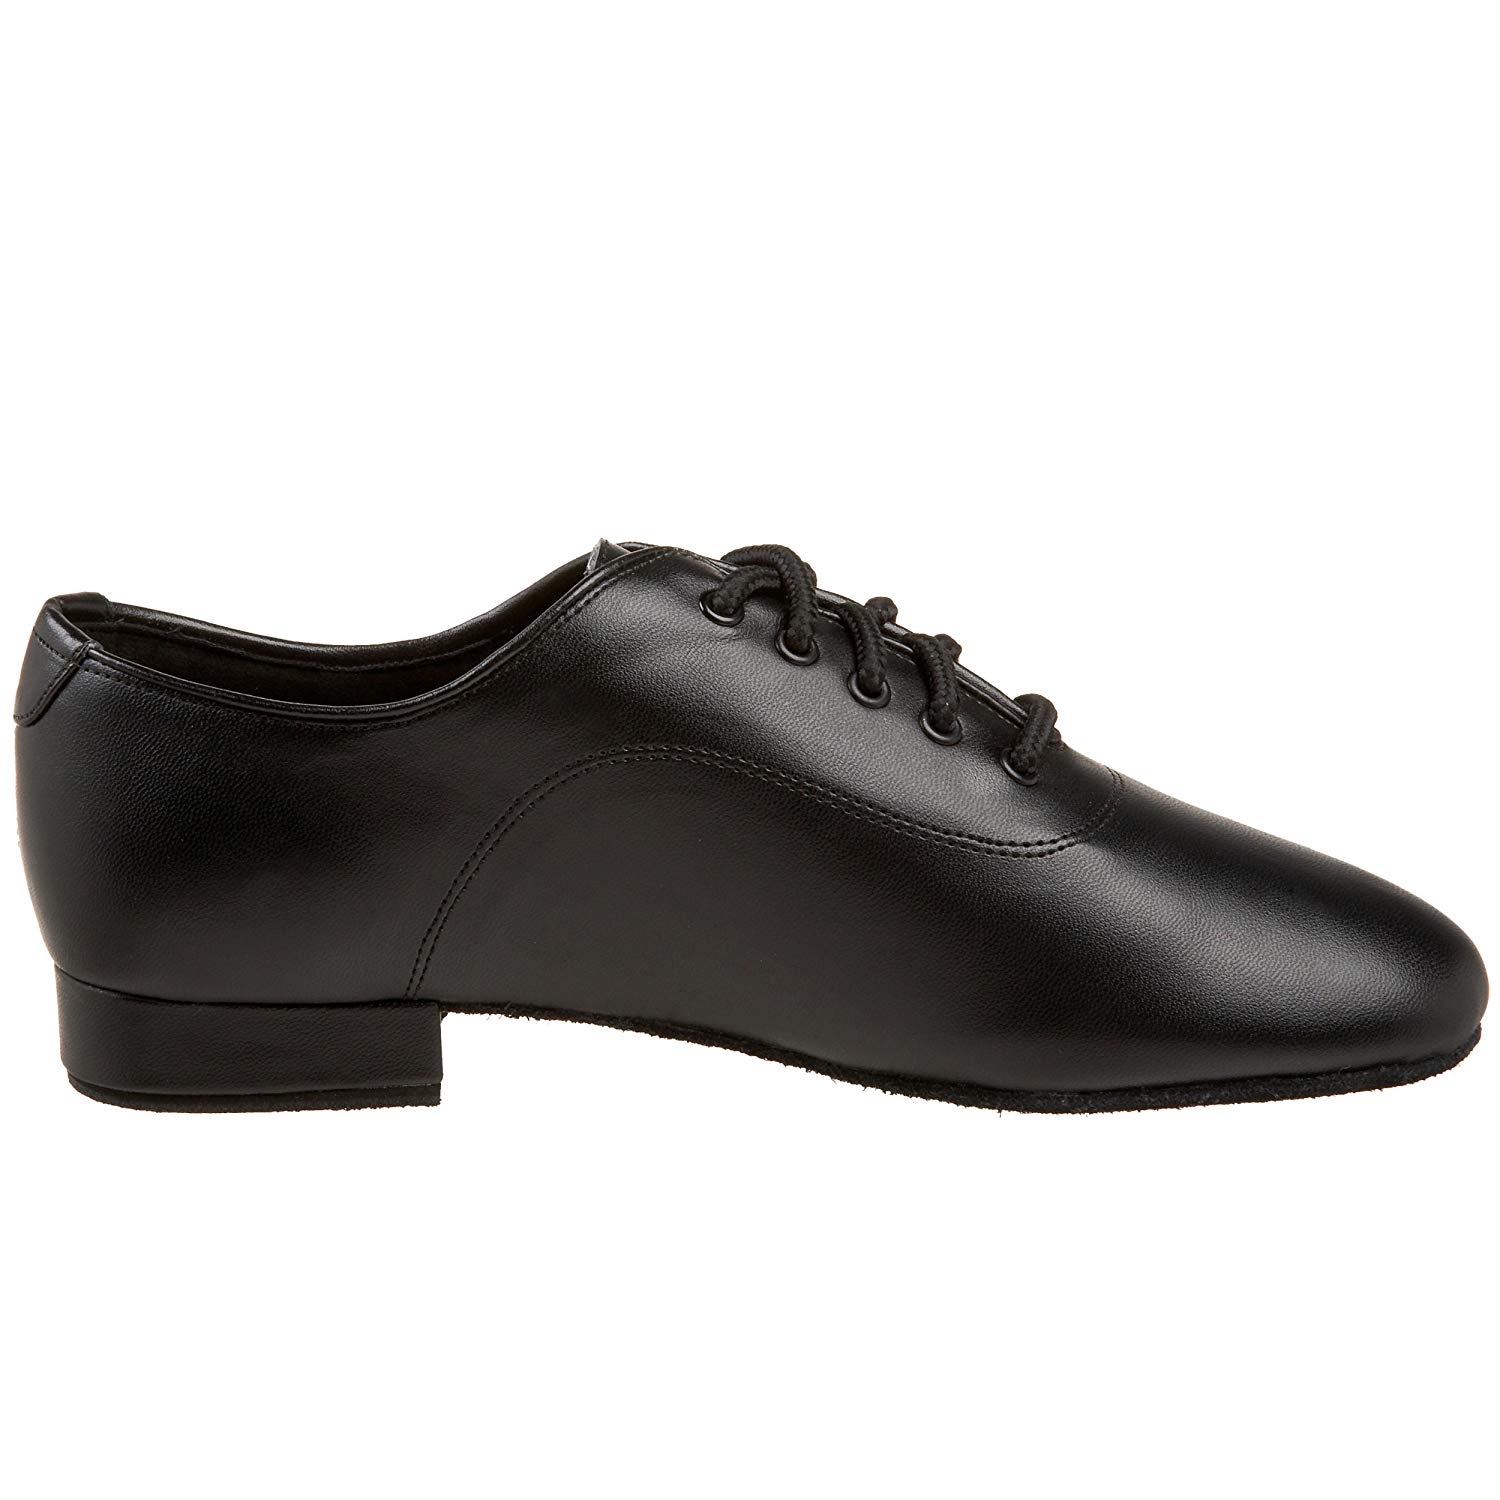 Capezio Men's SD103 Social Dance Shoe, Black, Size 10.0 LKpQ | eBay